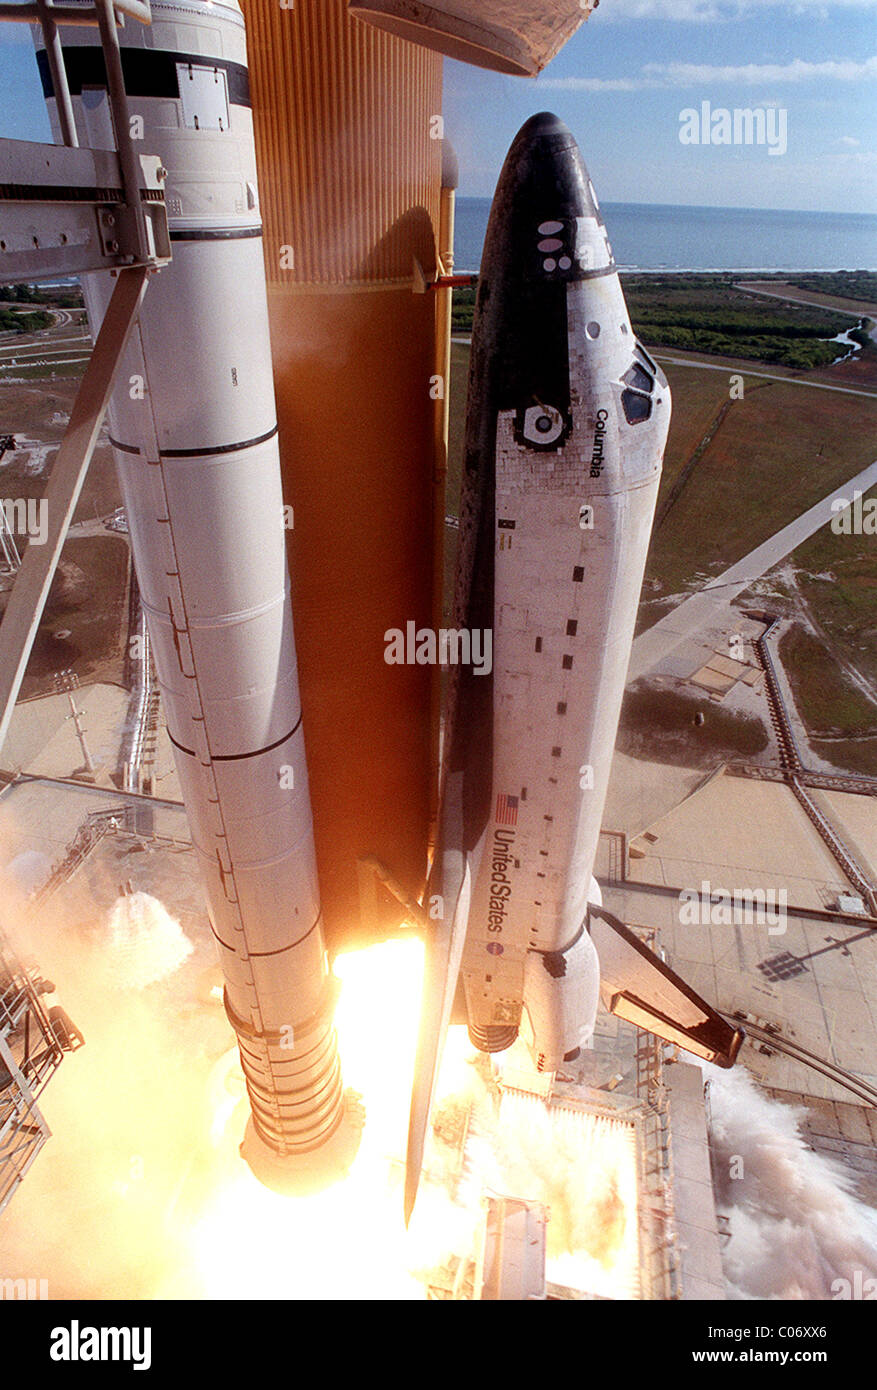 La navette spatiale Columbia sur son lancement final, 2003 Banque D'Images